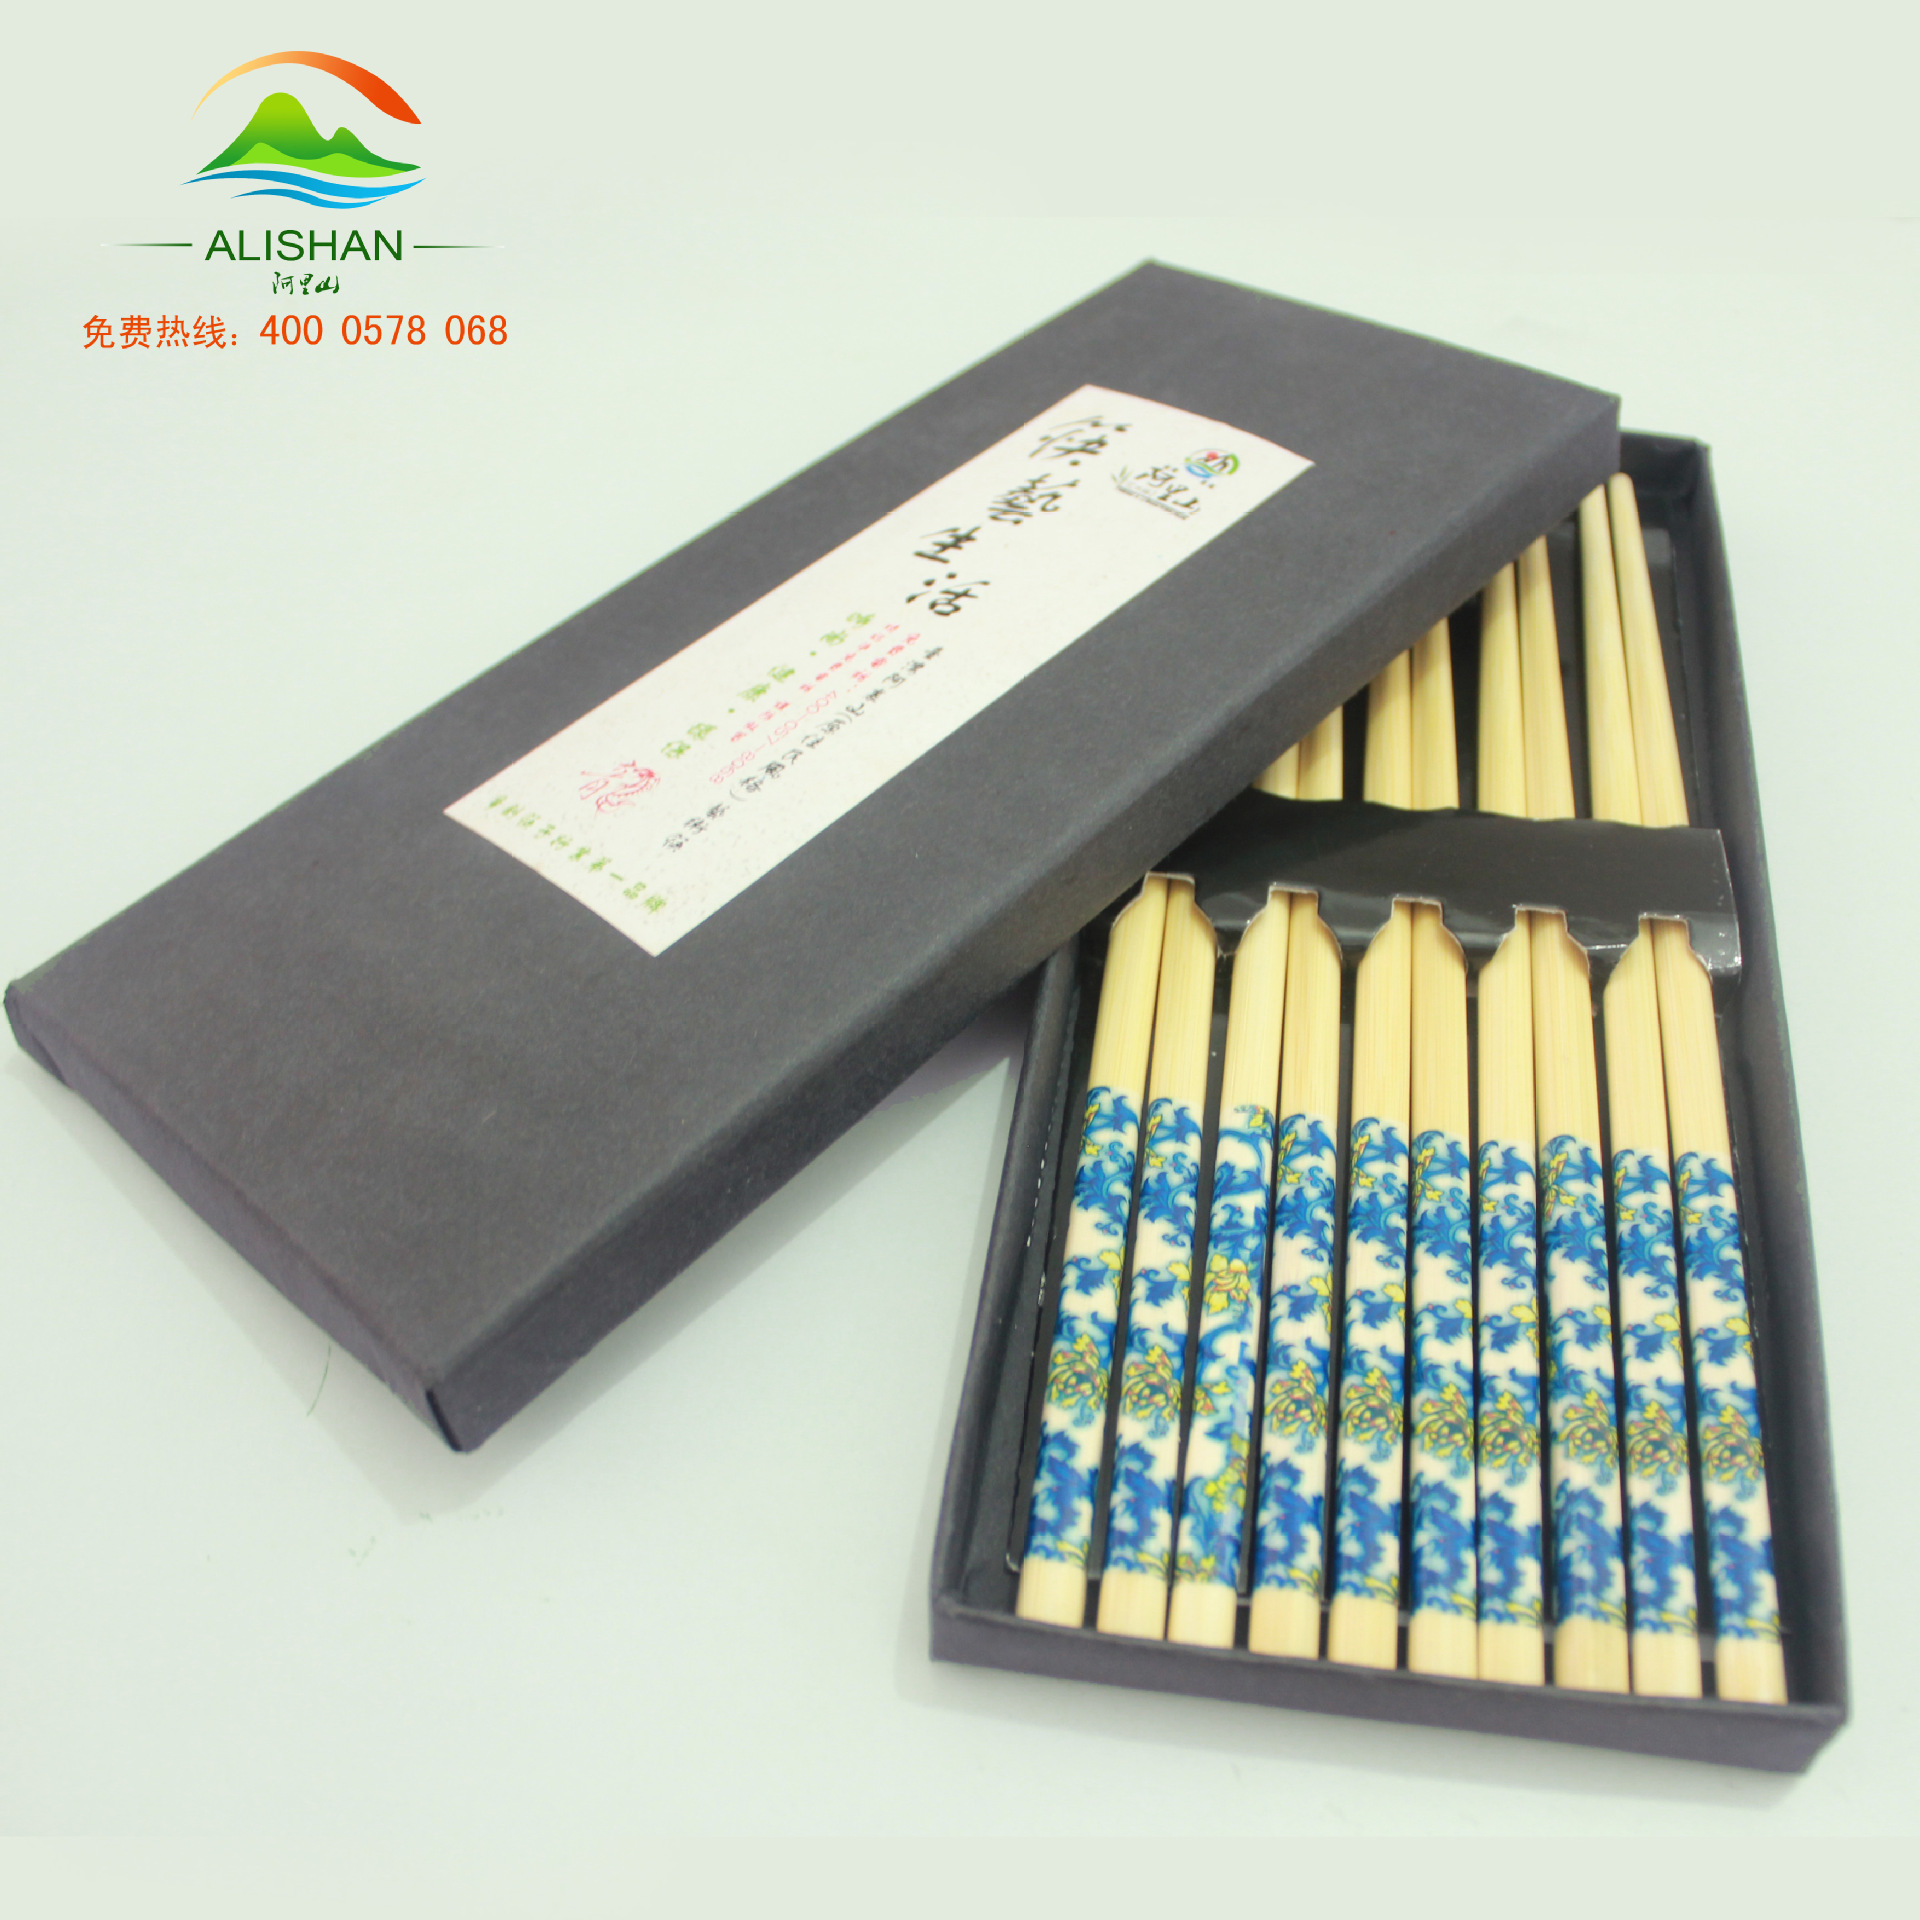 艺术筷多种印花筷子 赠品礼盒筷子  筷子生活图片